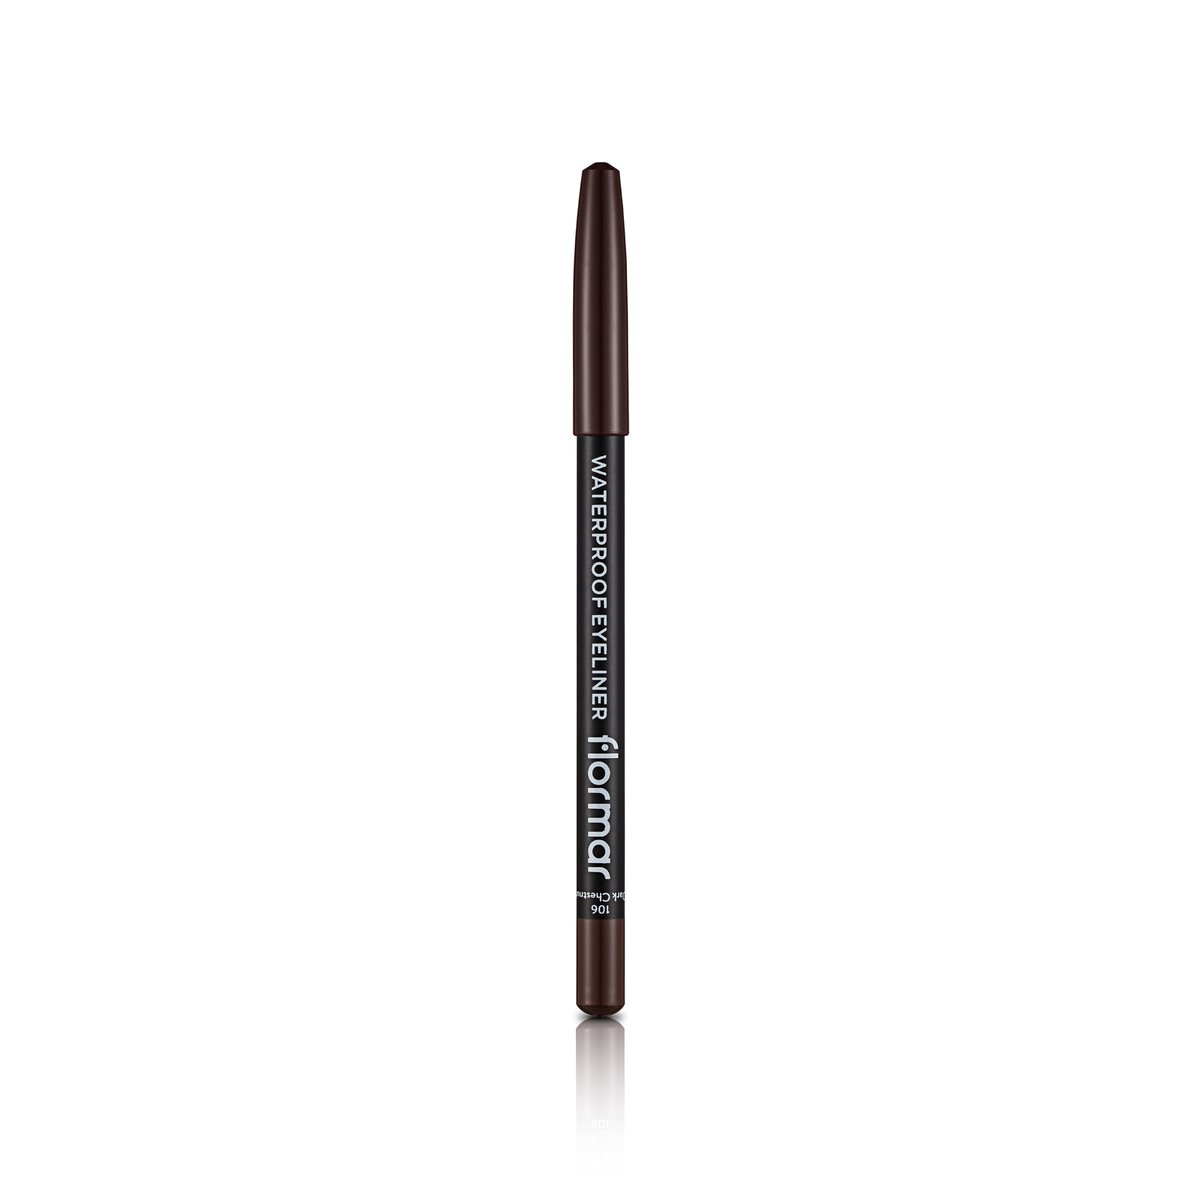 Flormar Waterproof Eyeliner Pencil - 106 Chestnut 1pc